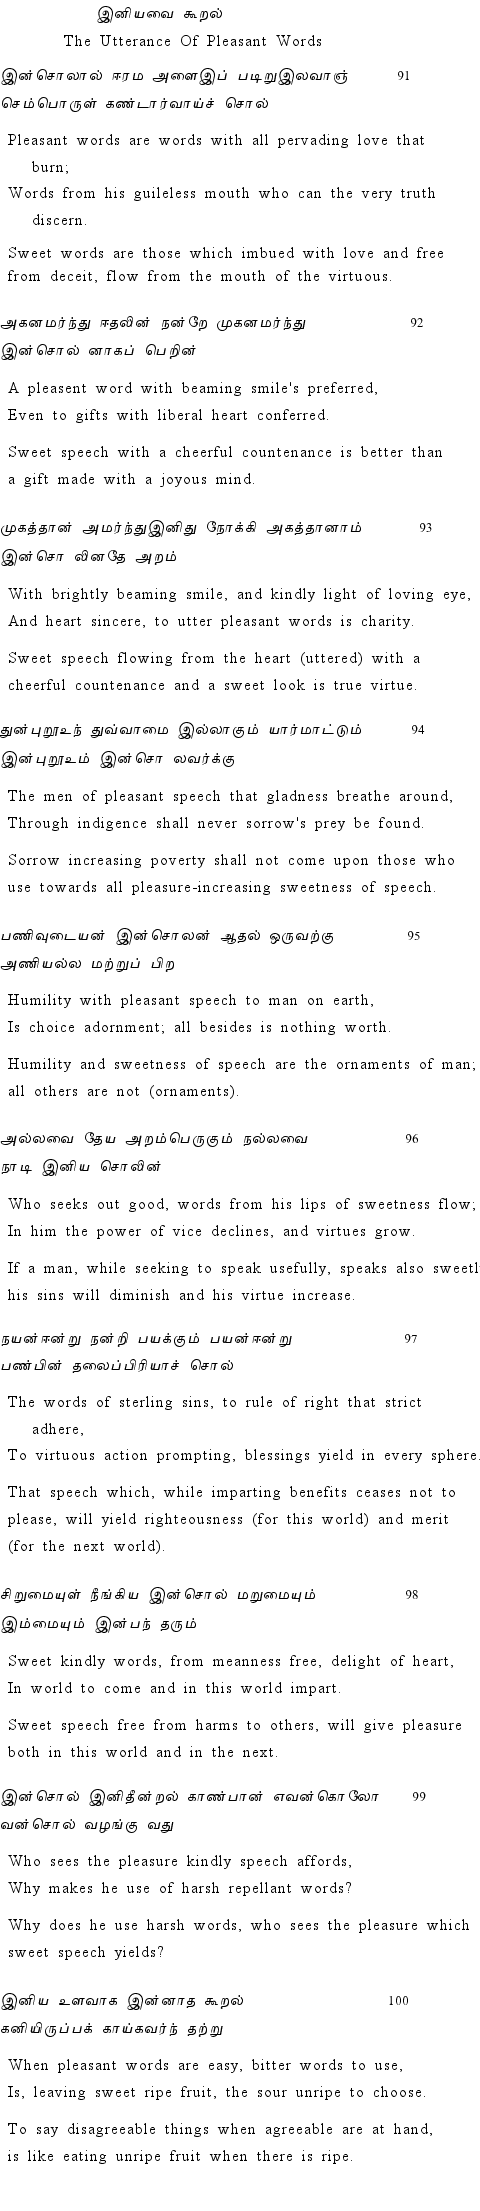 Text of Adhikaram 10